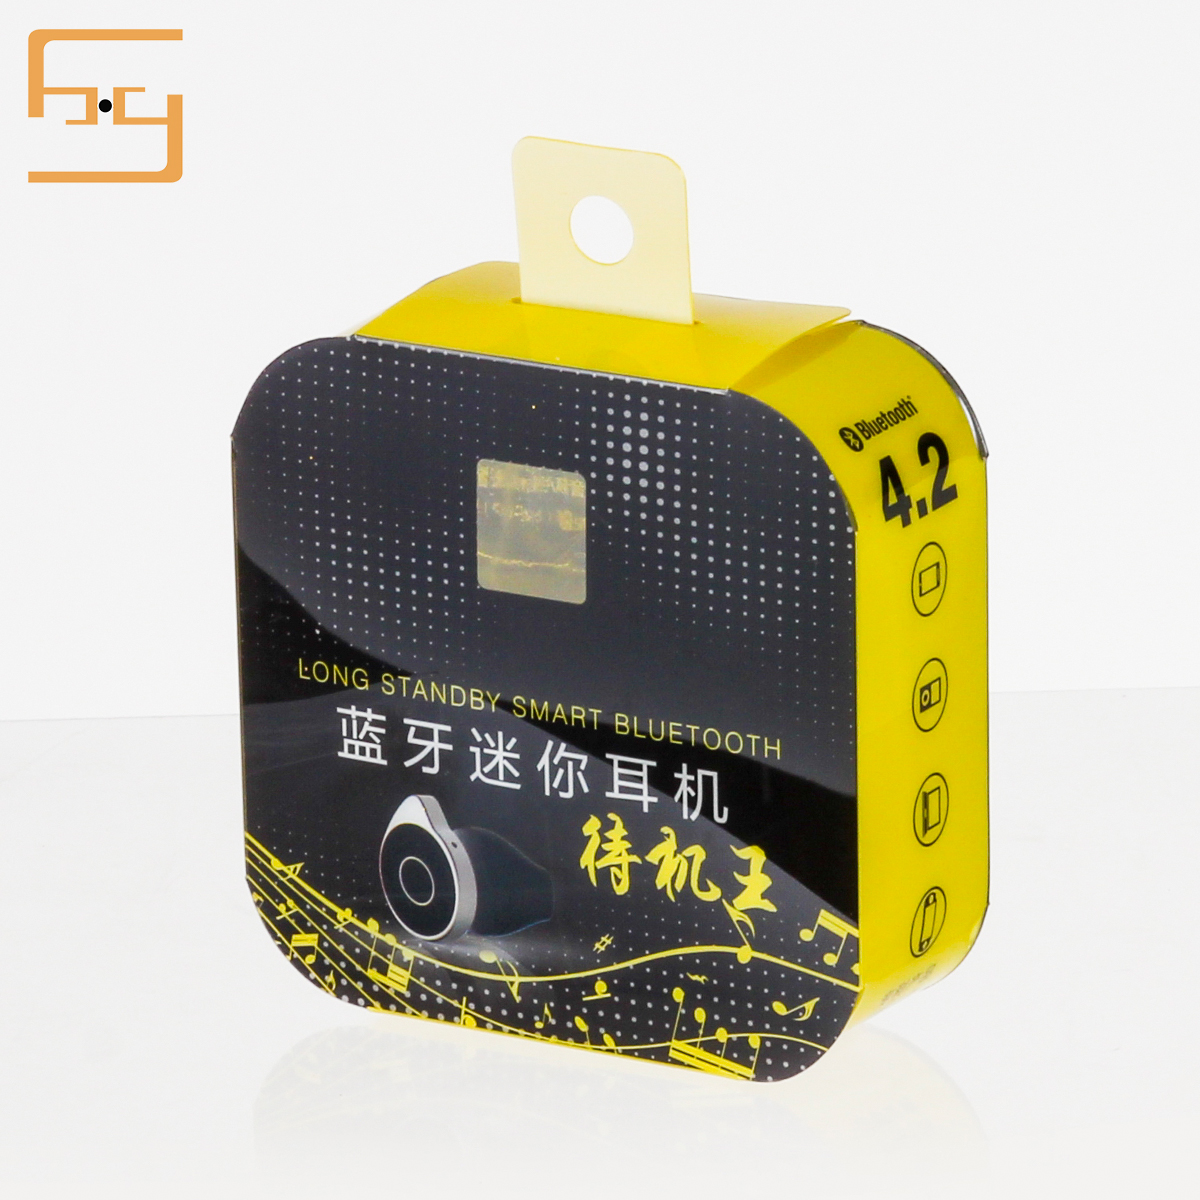  Shenzhen Xin Hong Yang Packaging Products Co. 3